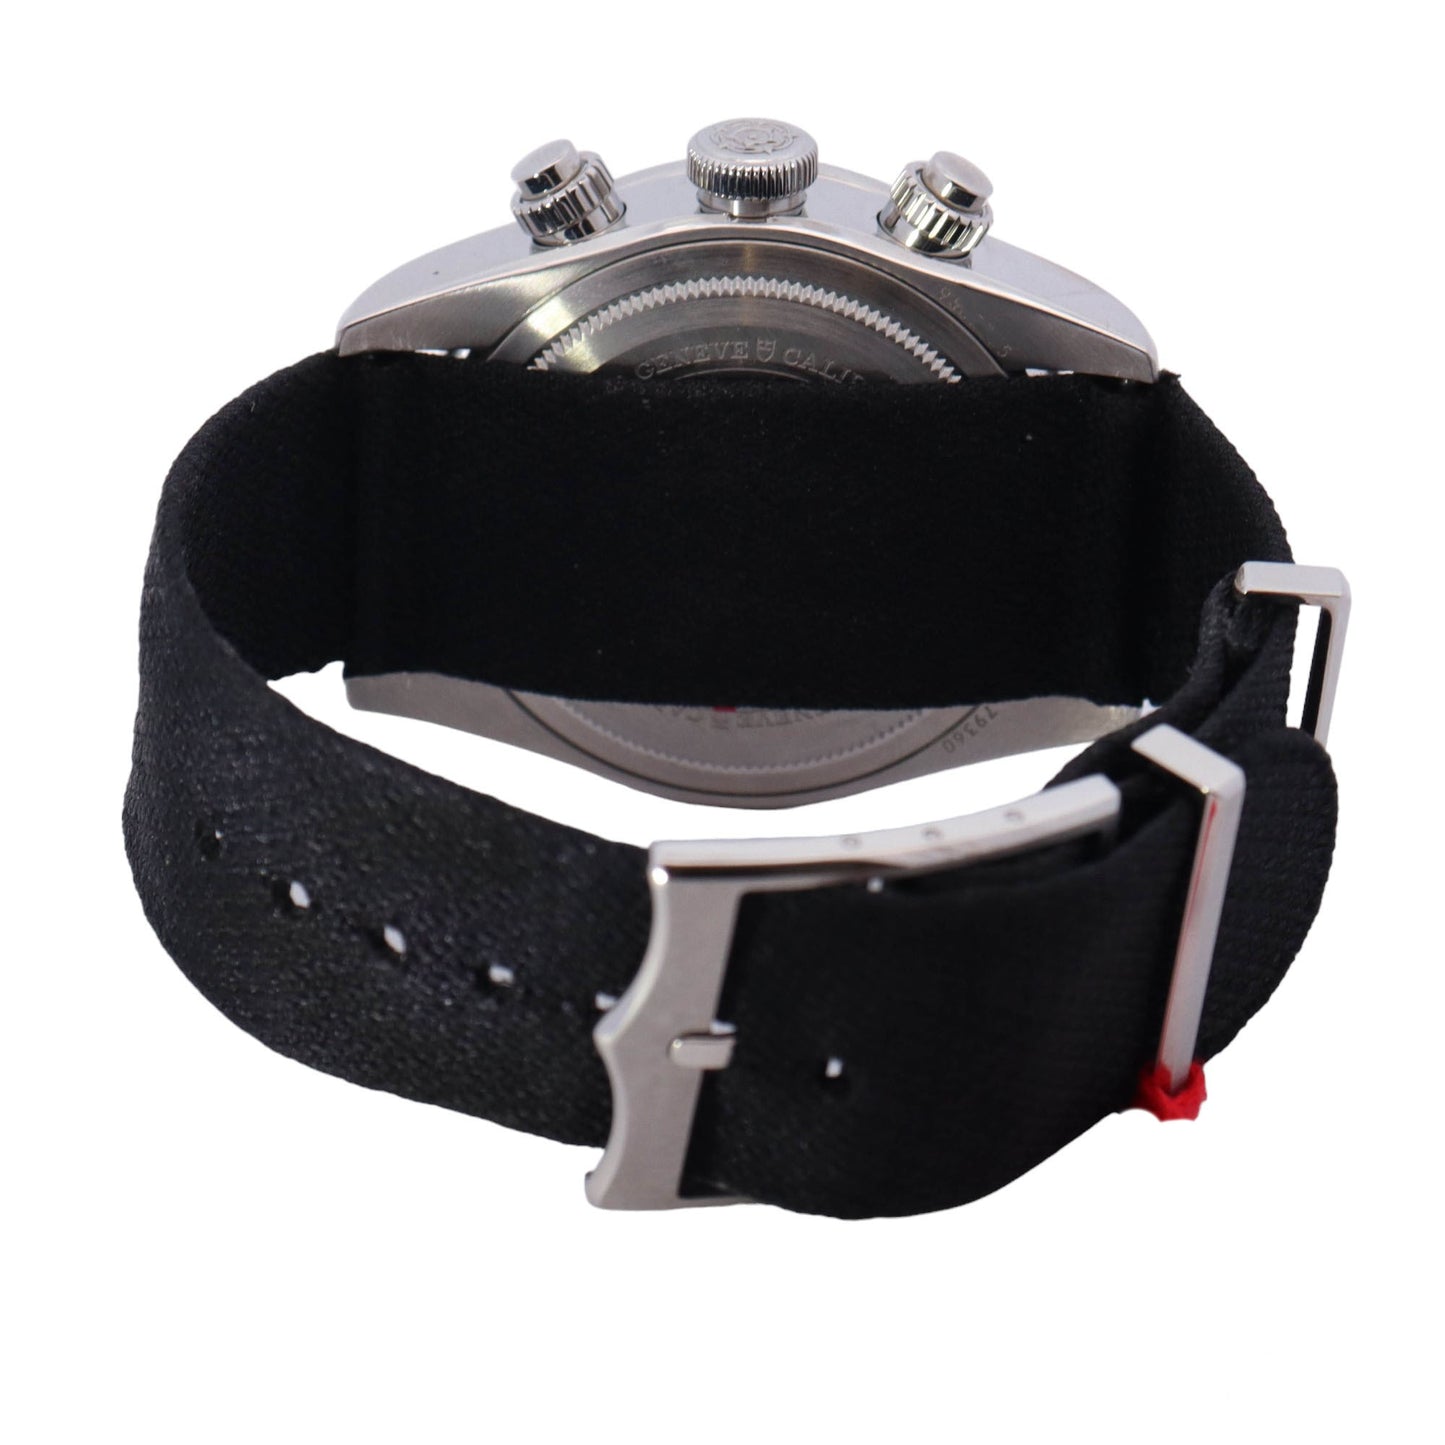 Tudor Black Bay Chrono Black Chronograph Dial Watch Reference #: 79360 - Happy Jewelers Fine Jewelry Lifetime Warranty